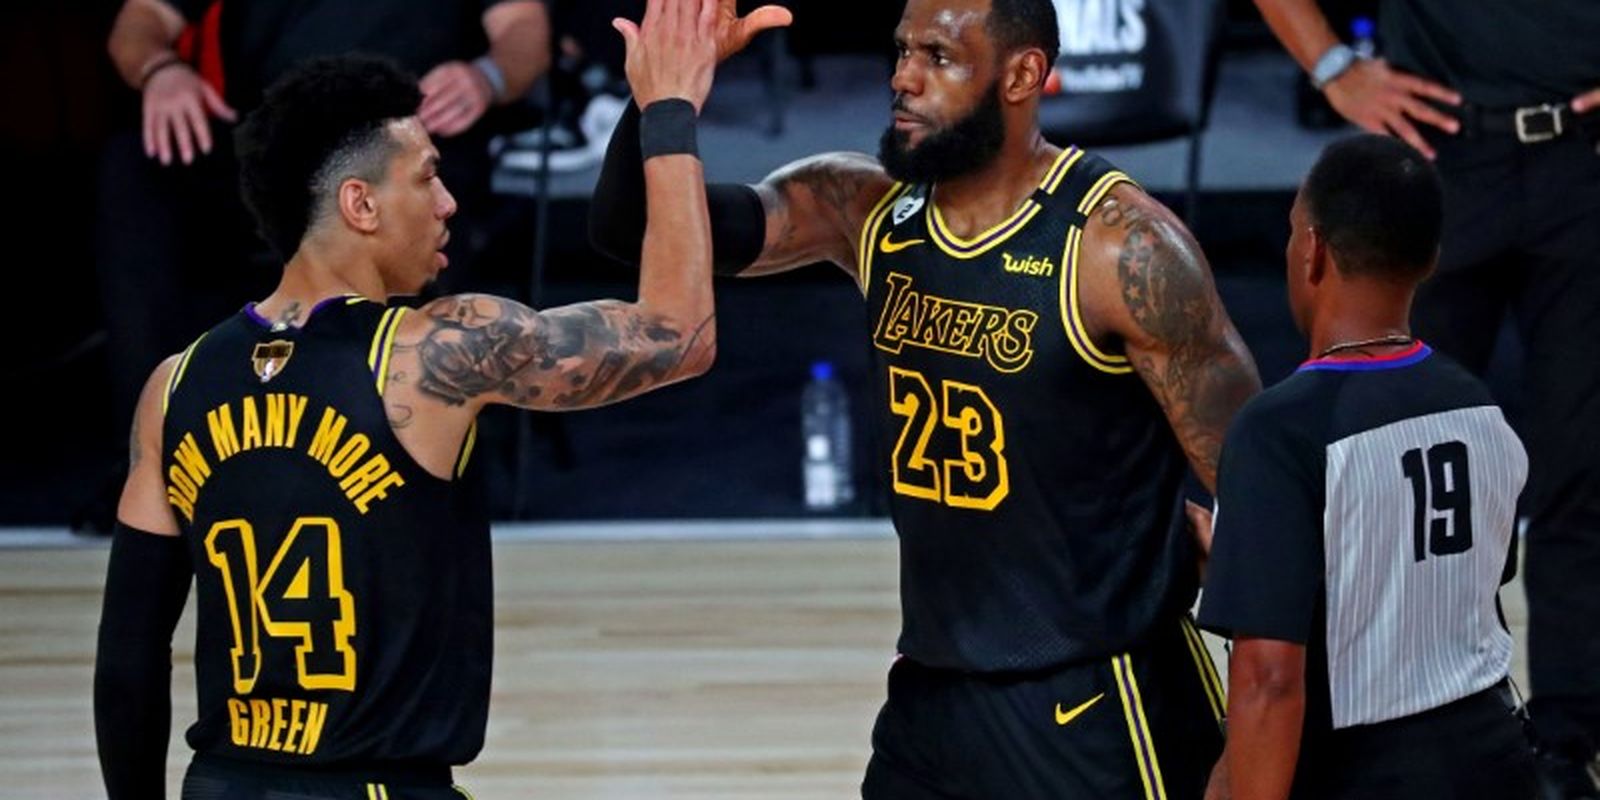 NBA Finals: o que esperar das partidas decisivas?